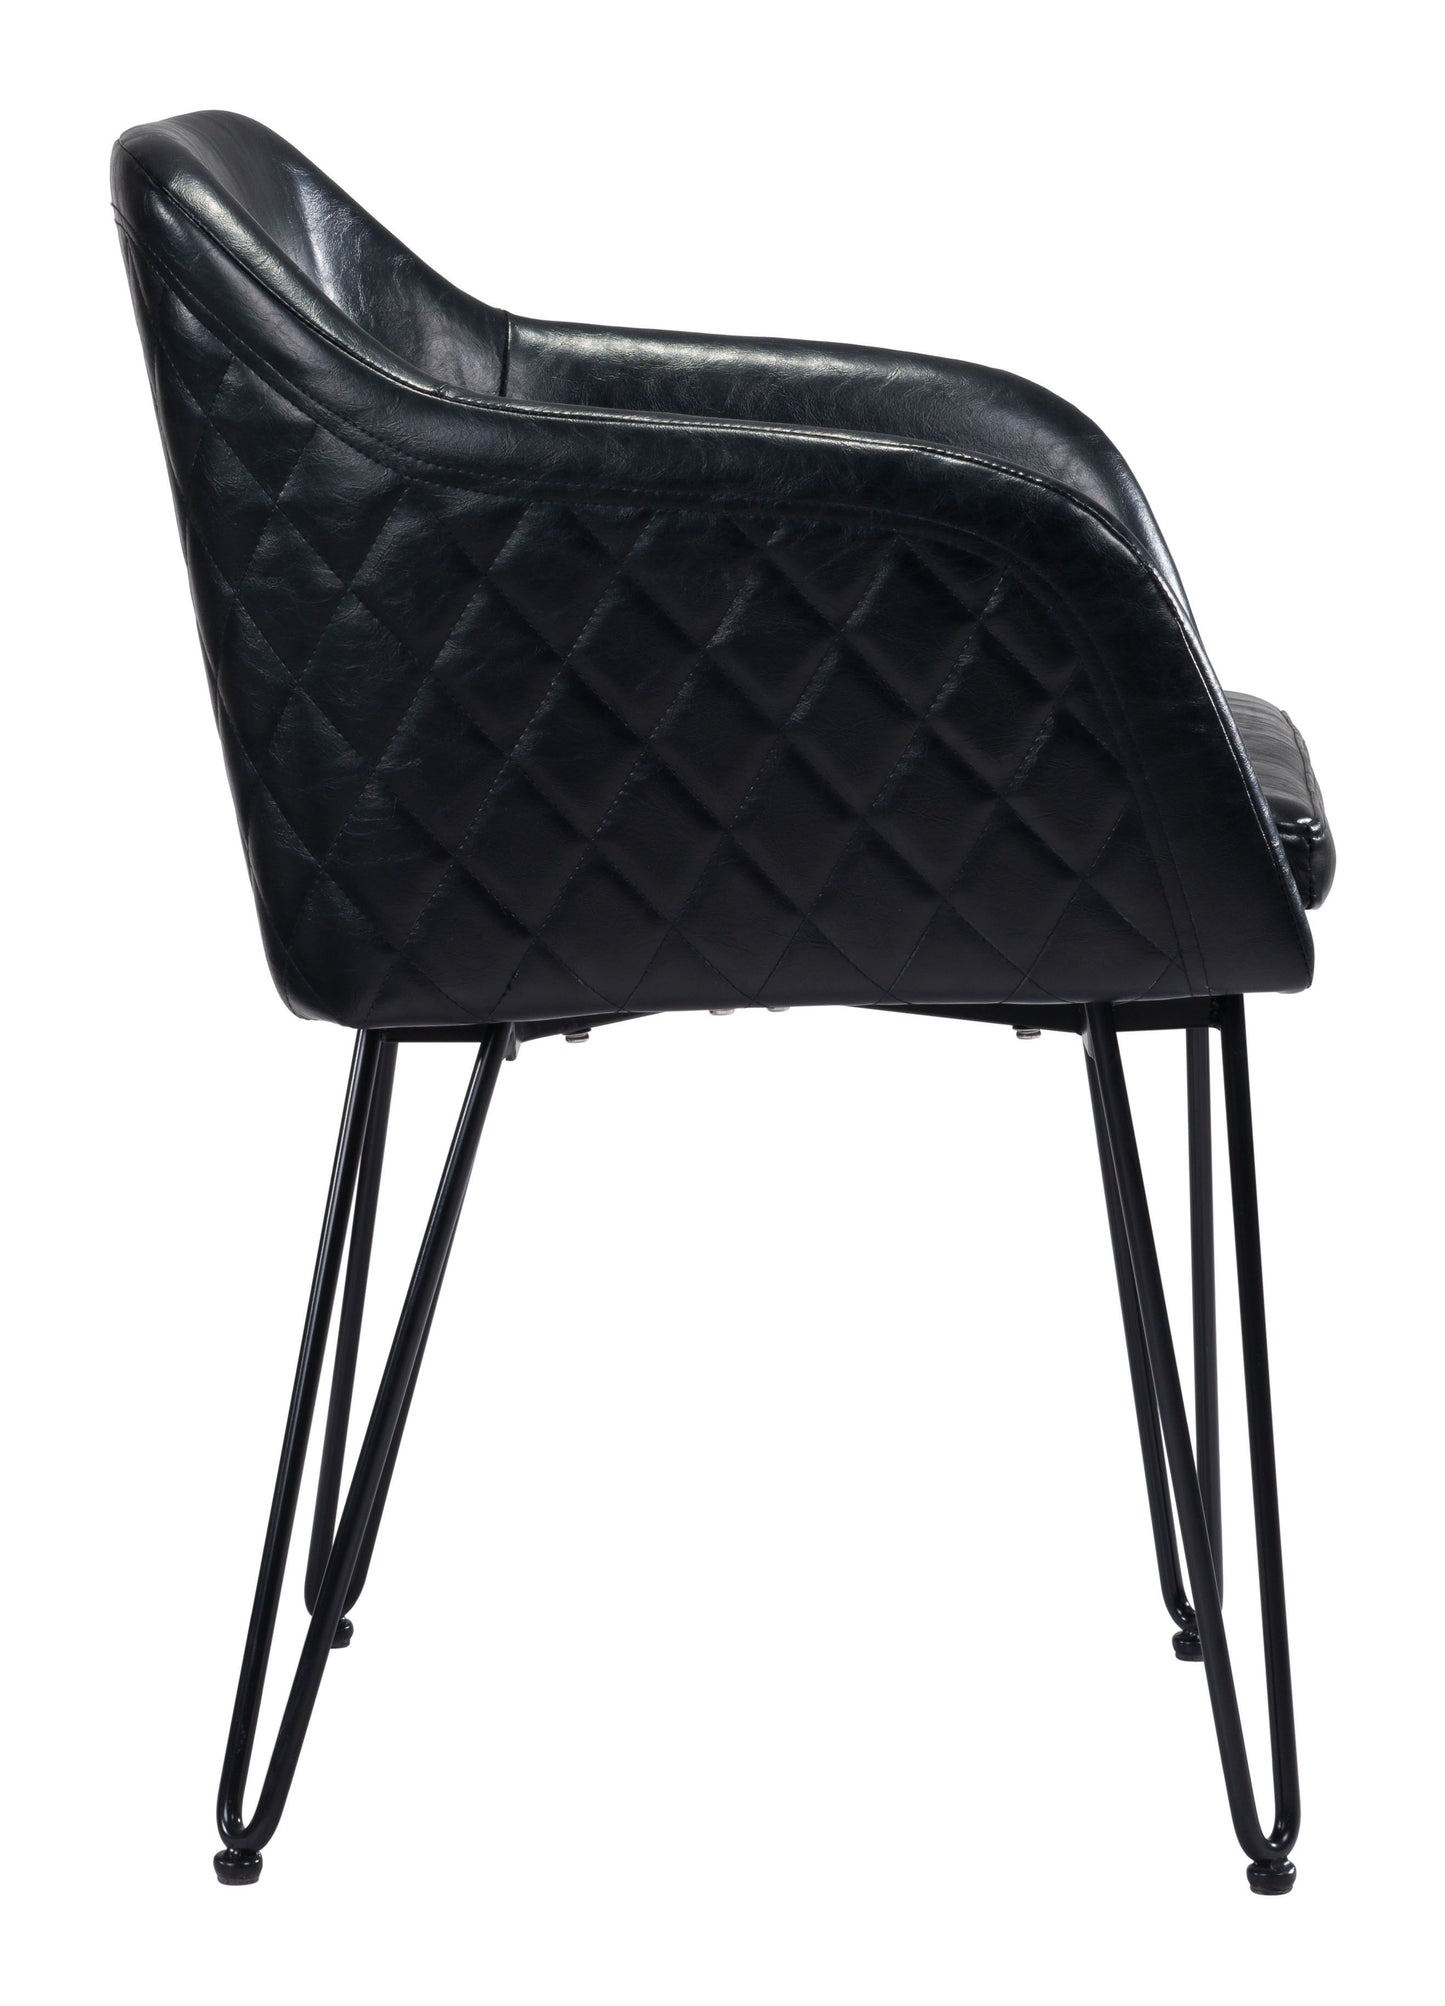 Braxton Dining Chair Black